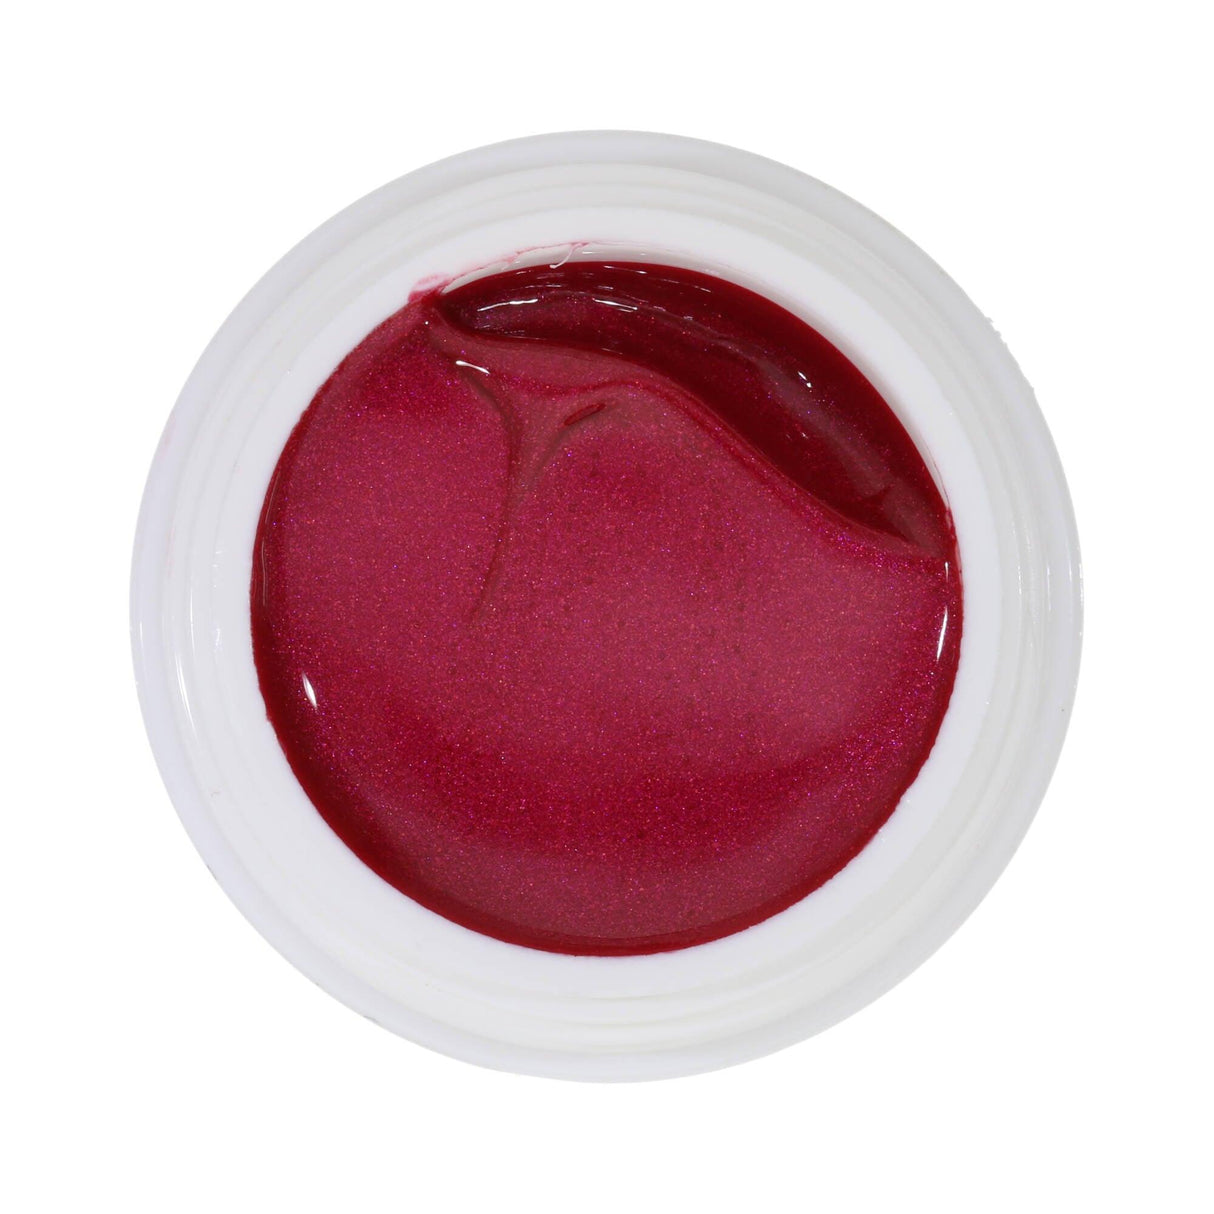 #983 Effekt Farbgel 5ml Rot - MSE - The Beauty Company